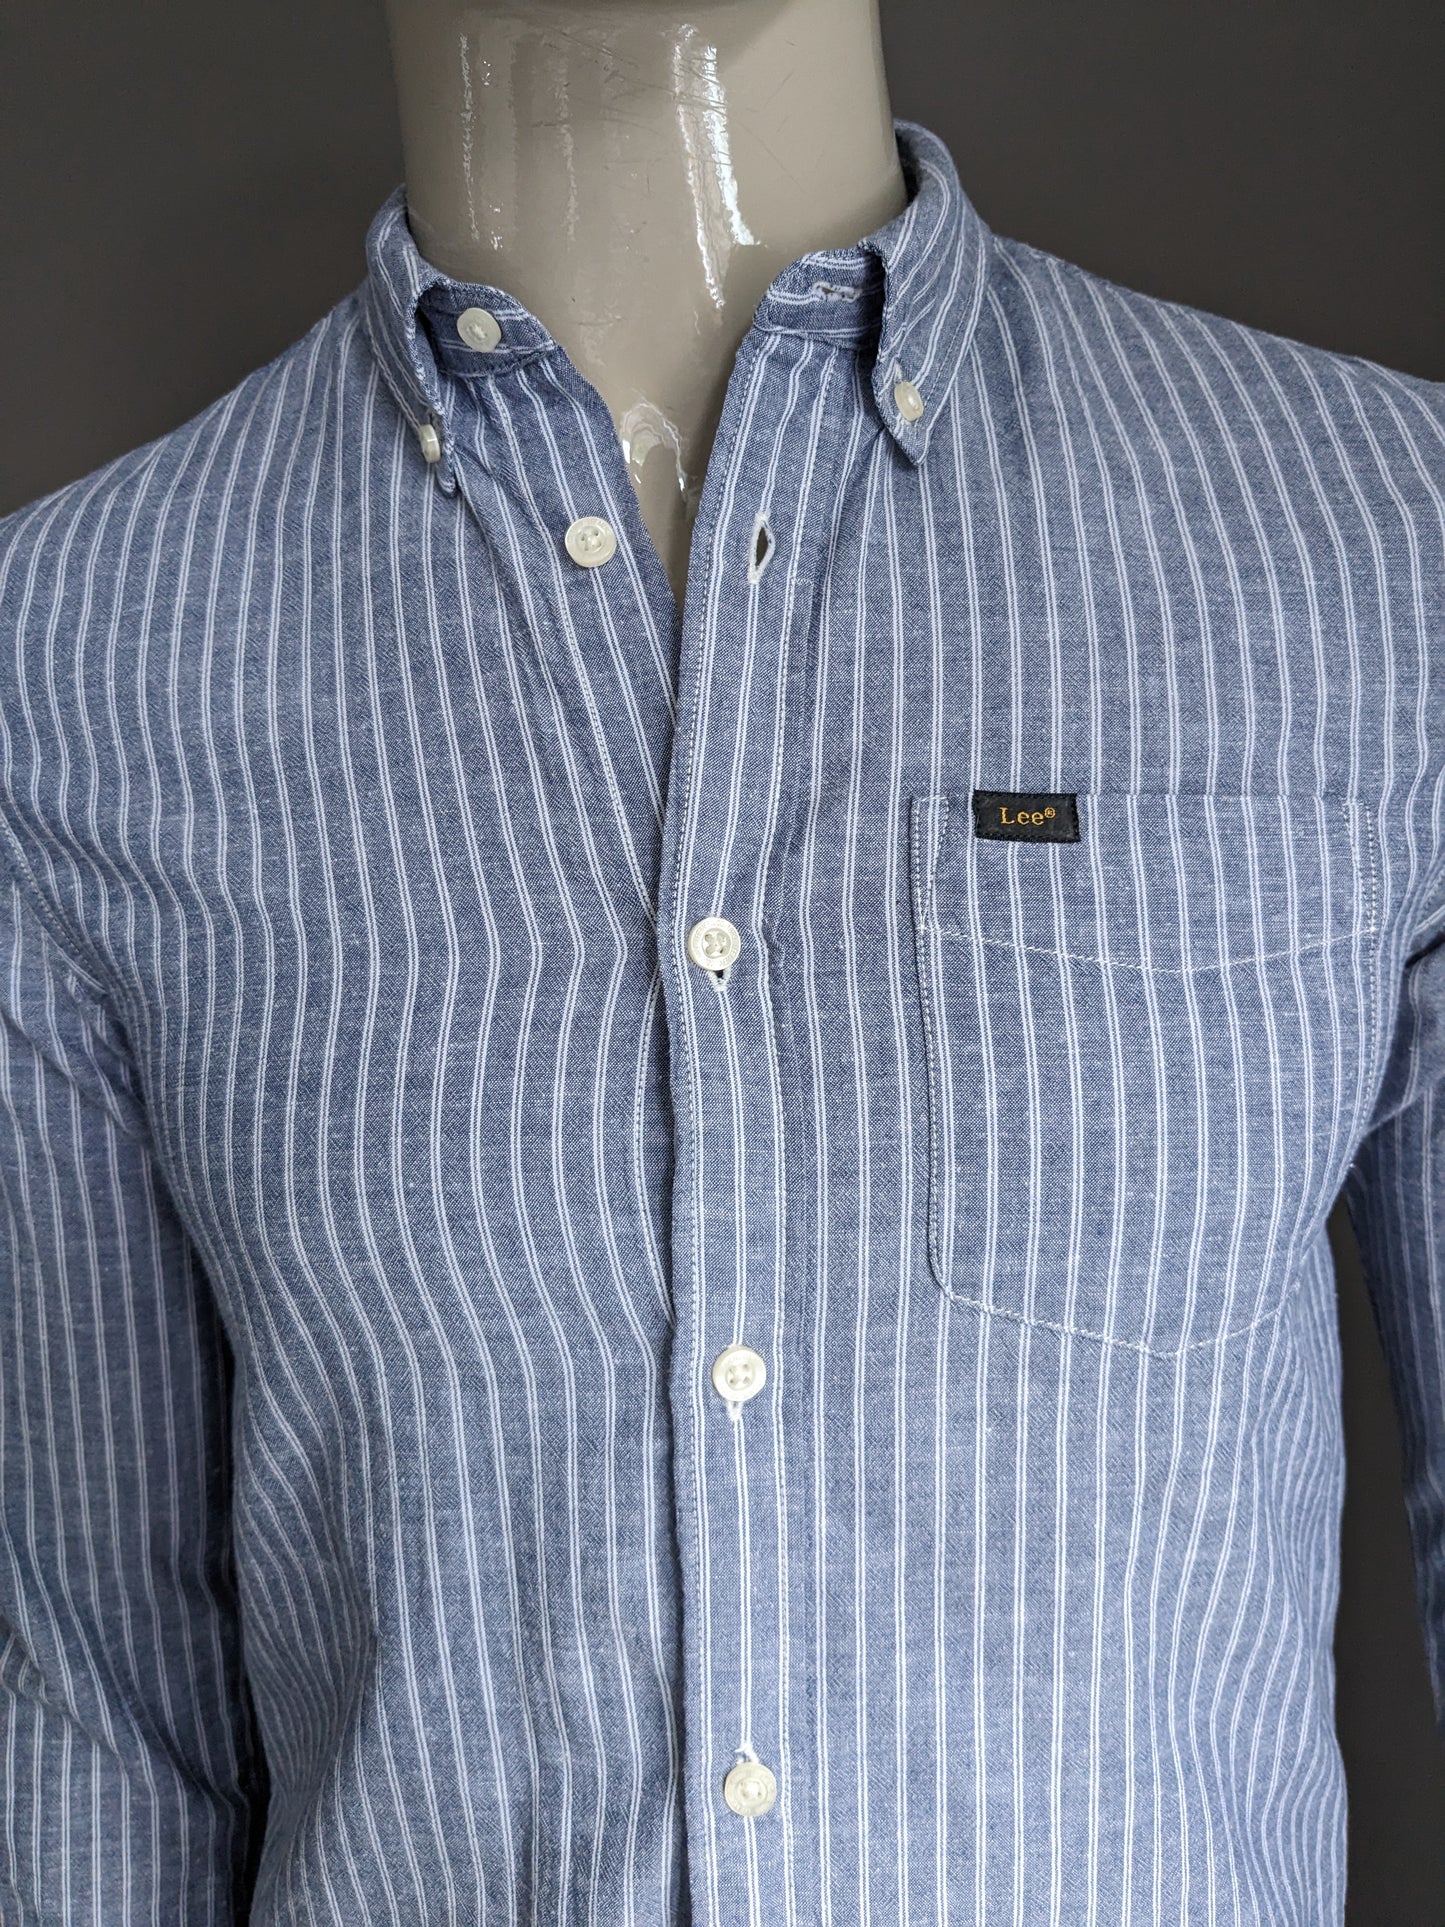 LEE linnen overhemd. Blauw Wit gestreept. Maat S. Regular Fit. 88% Katoen & 12% Linnen.